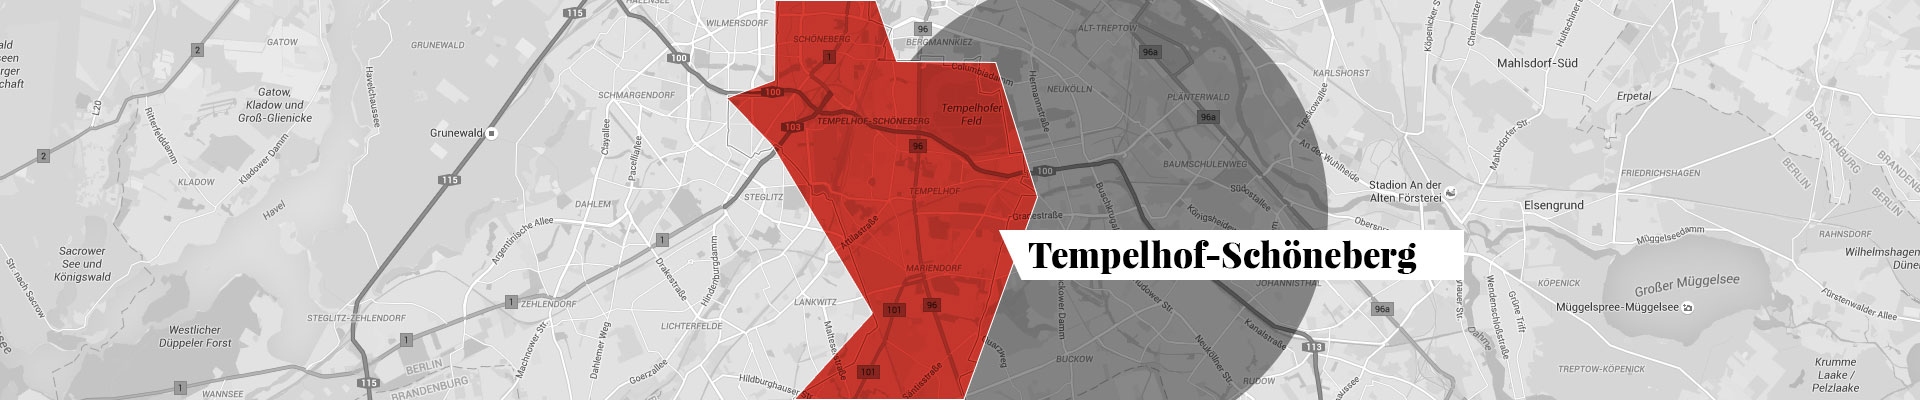 Tempelhof-Schöneberg plan